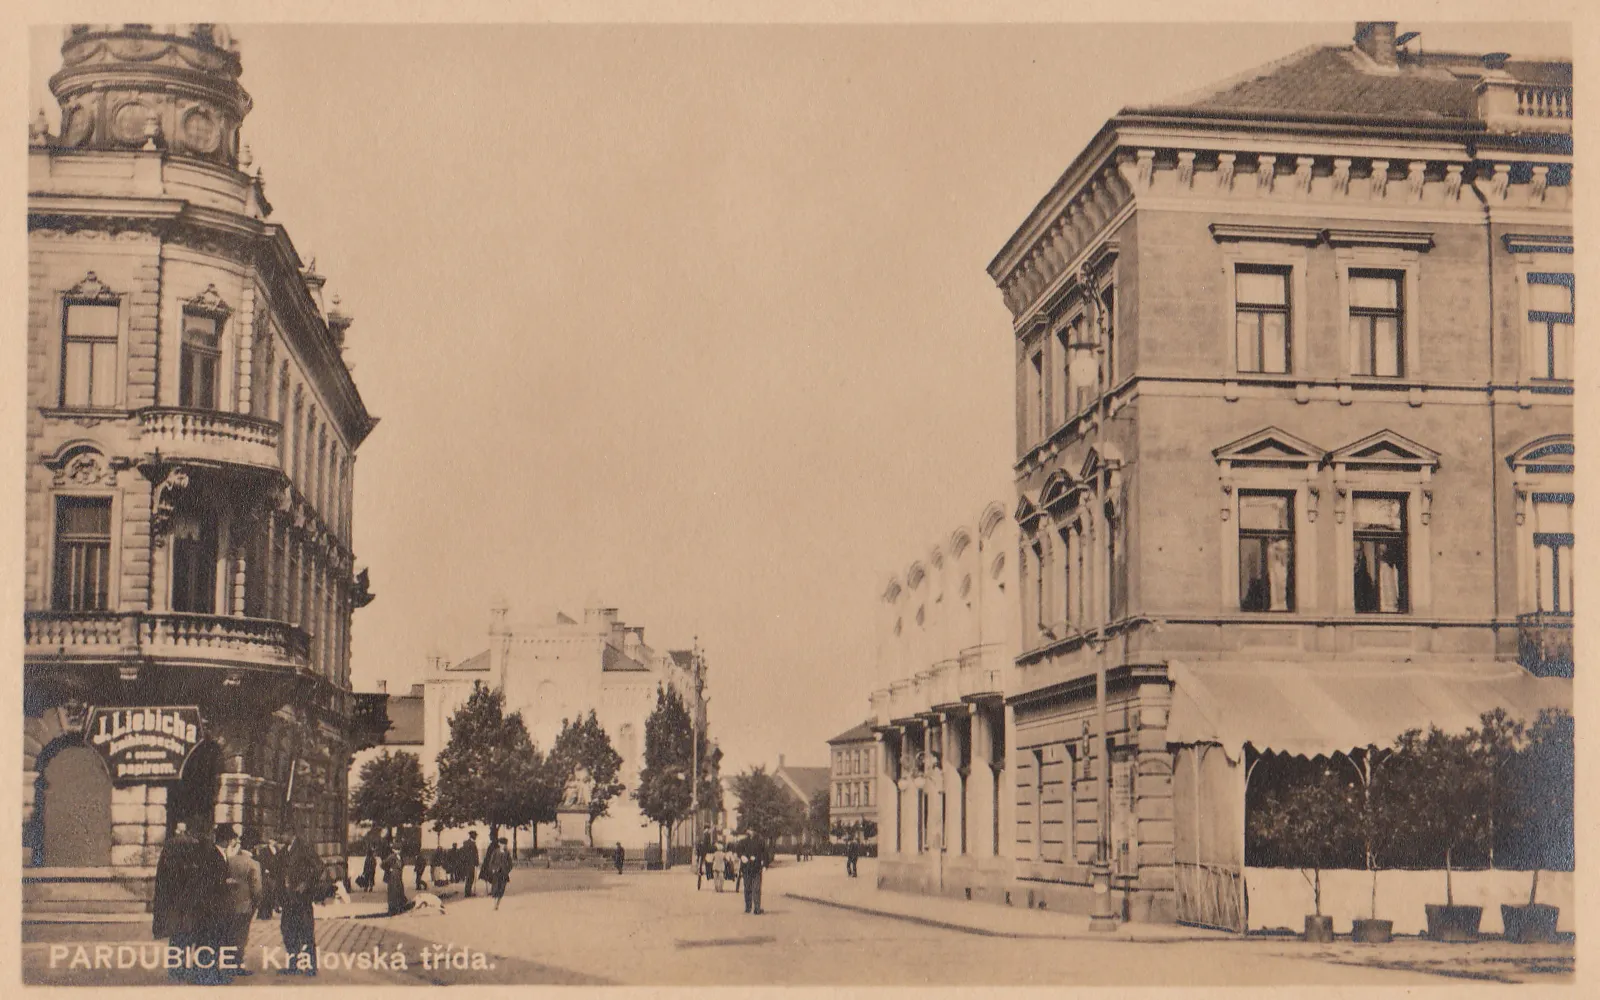 Photo showing: Pardubice. Královská avenue. (now Třída Míru, view facing west)